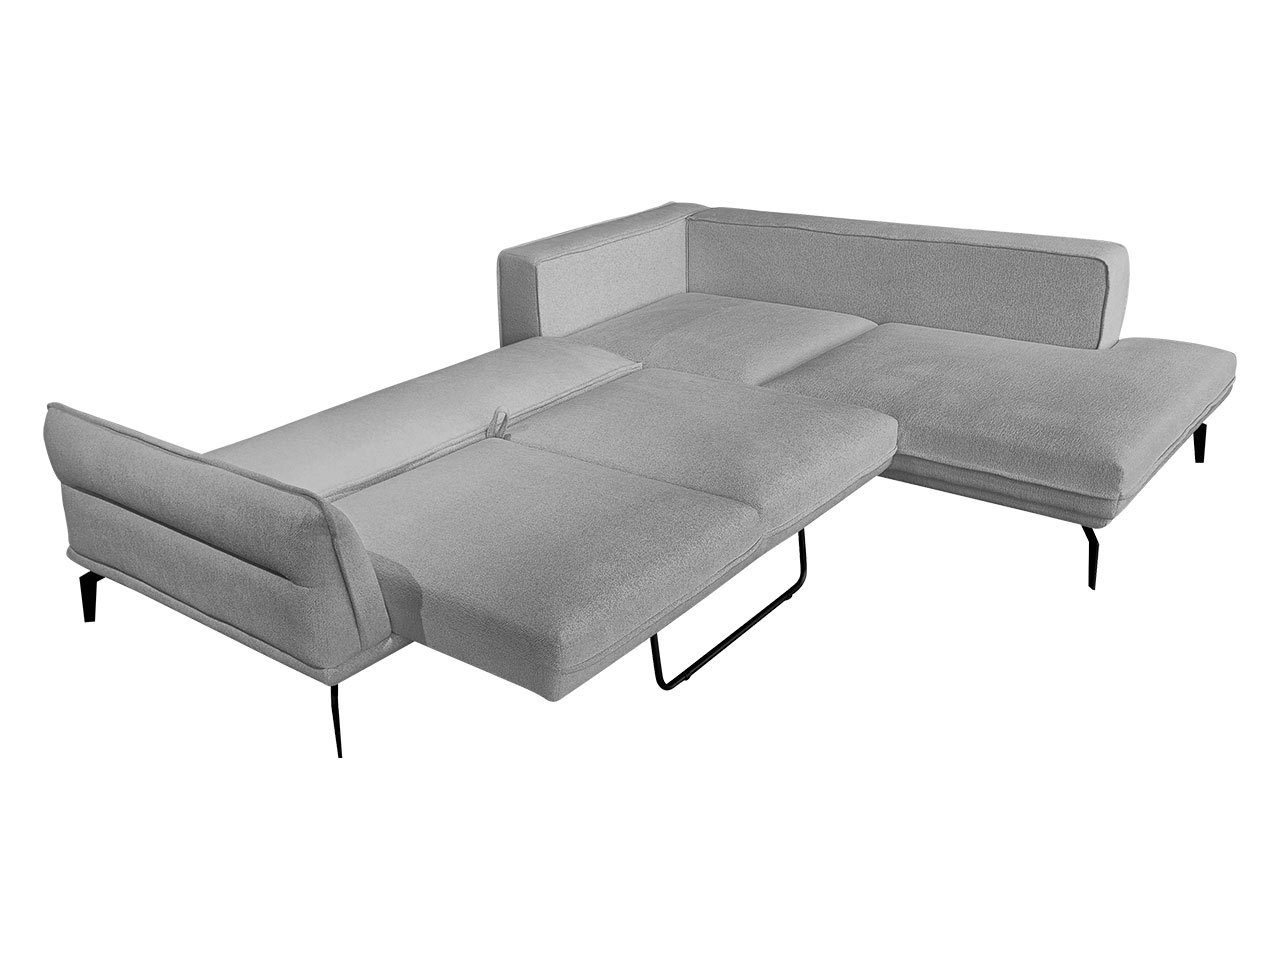 MIRJAN24 Ecksofa Zurich, mit Schlaffunktion, Sofa, Loft Couchgarnitur, 02 L-Form Monolith Polsterecke